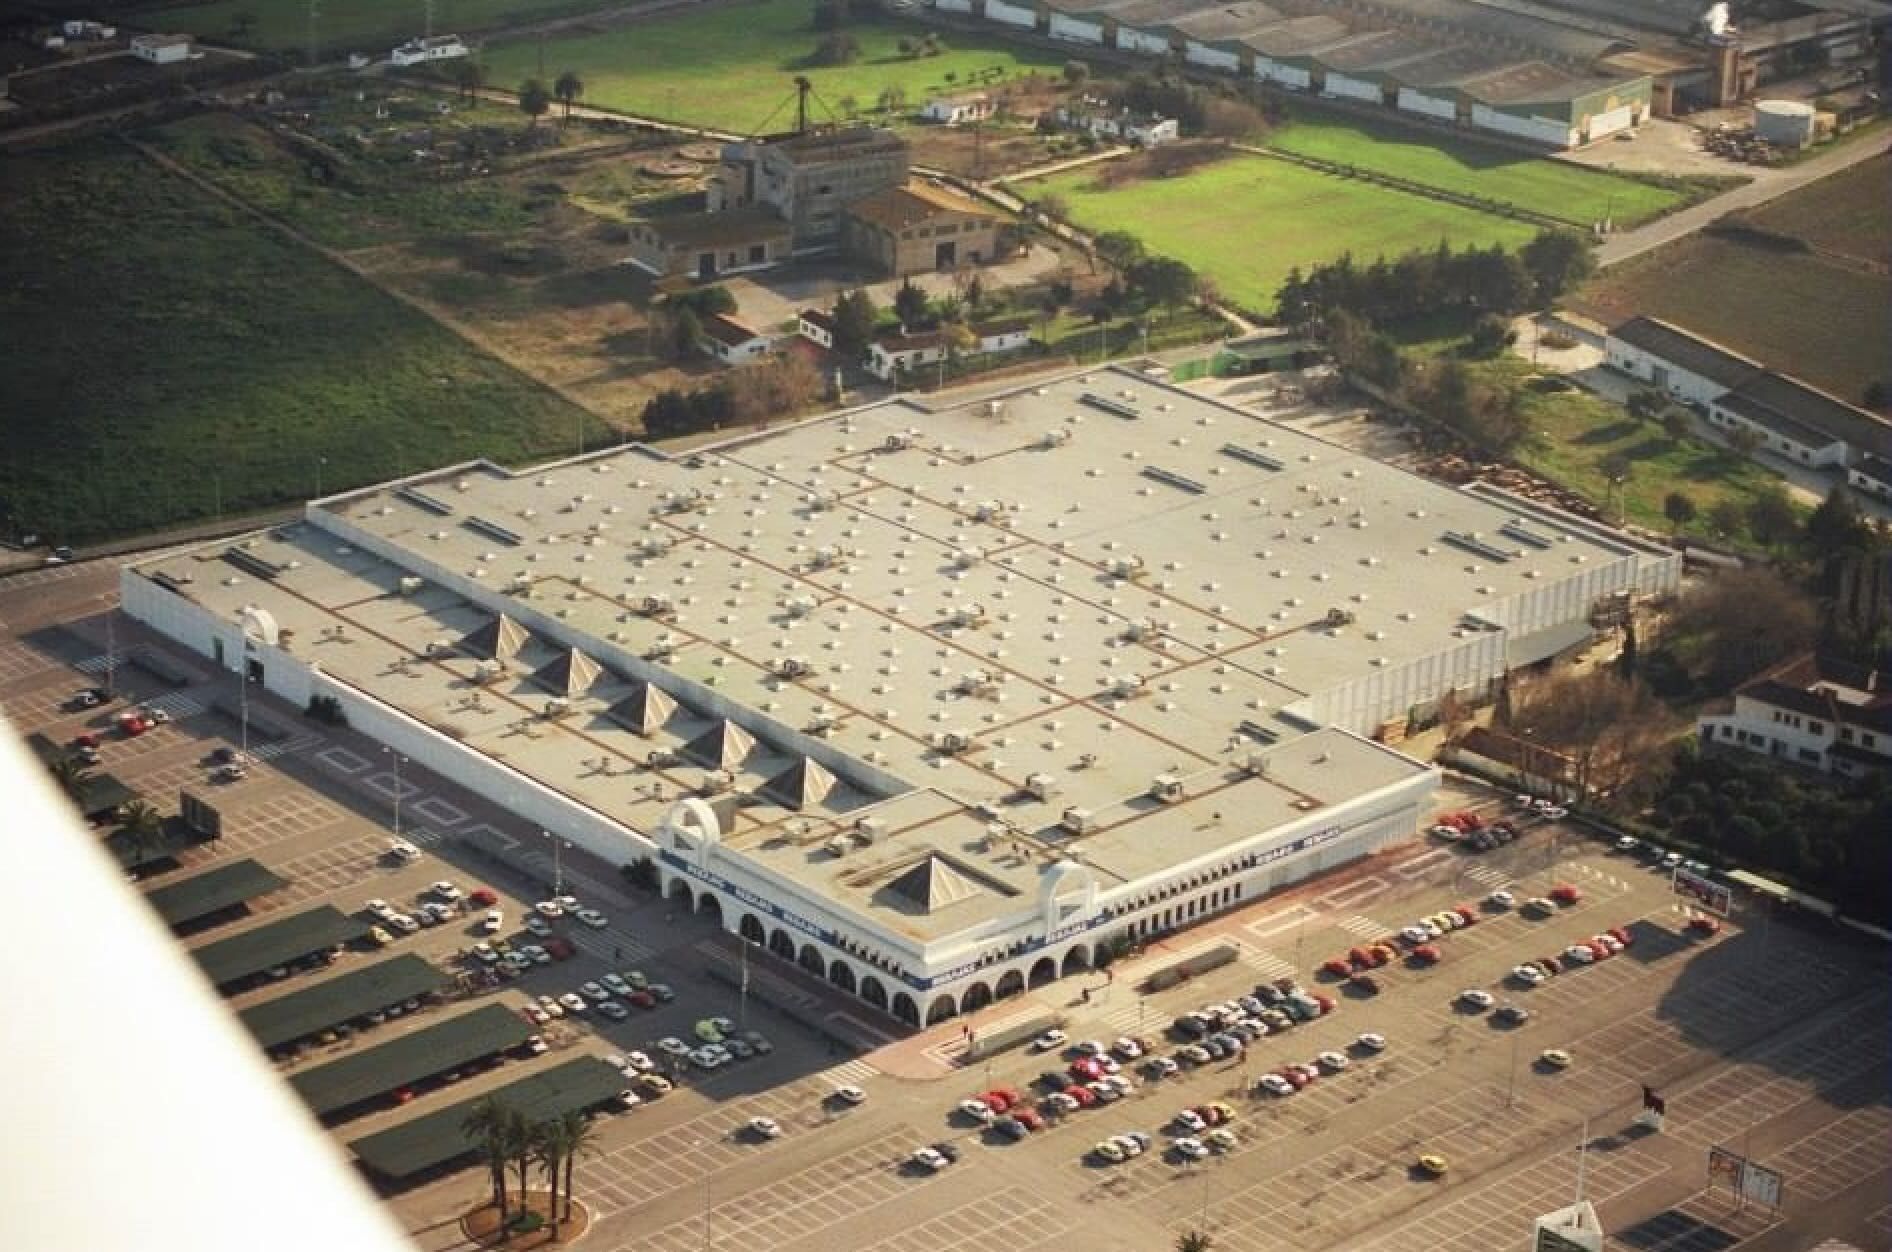 Vista aérea de El Corte Inglés, cuando era Hipercor en torno al año 1984, cuando inauguró sus instalaciones en la zona norte de Jerez, en una imagen de redes sociales.